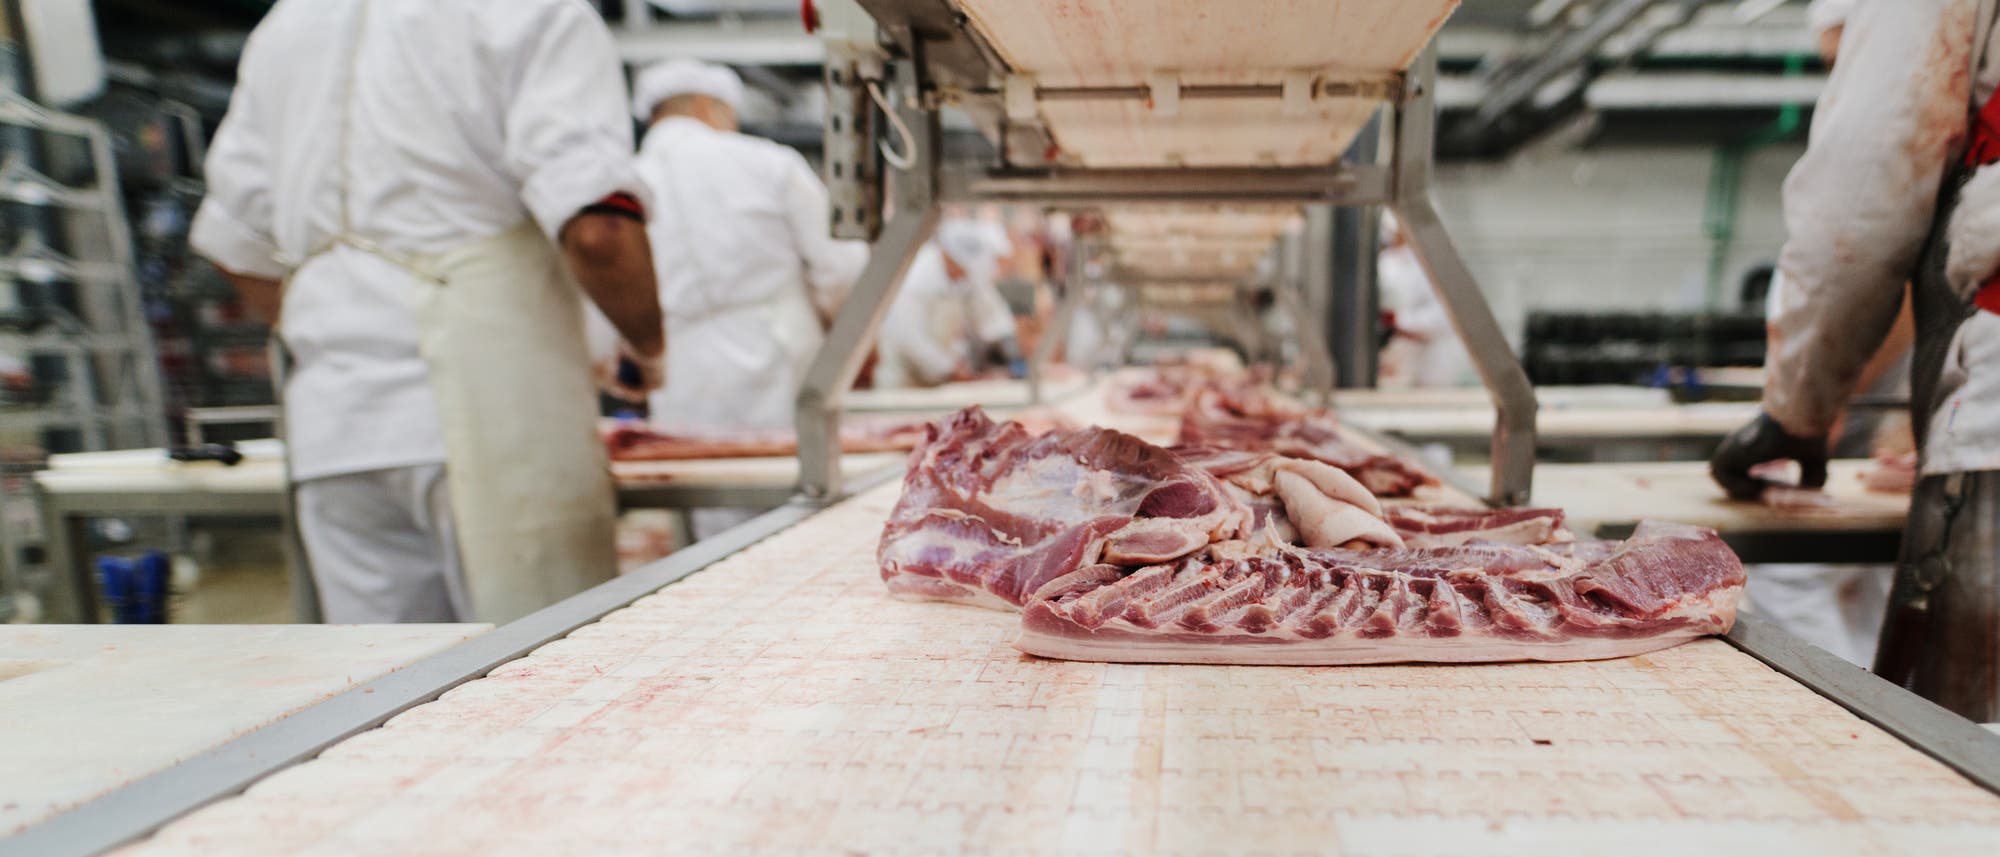 Rindfleisch wird auf einem Fließband zu Arbeitern transportiert.